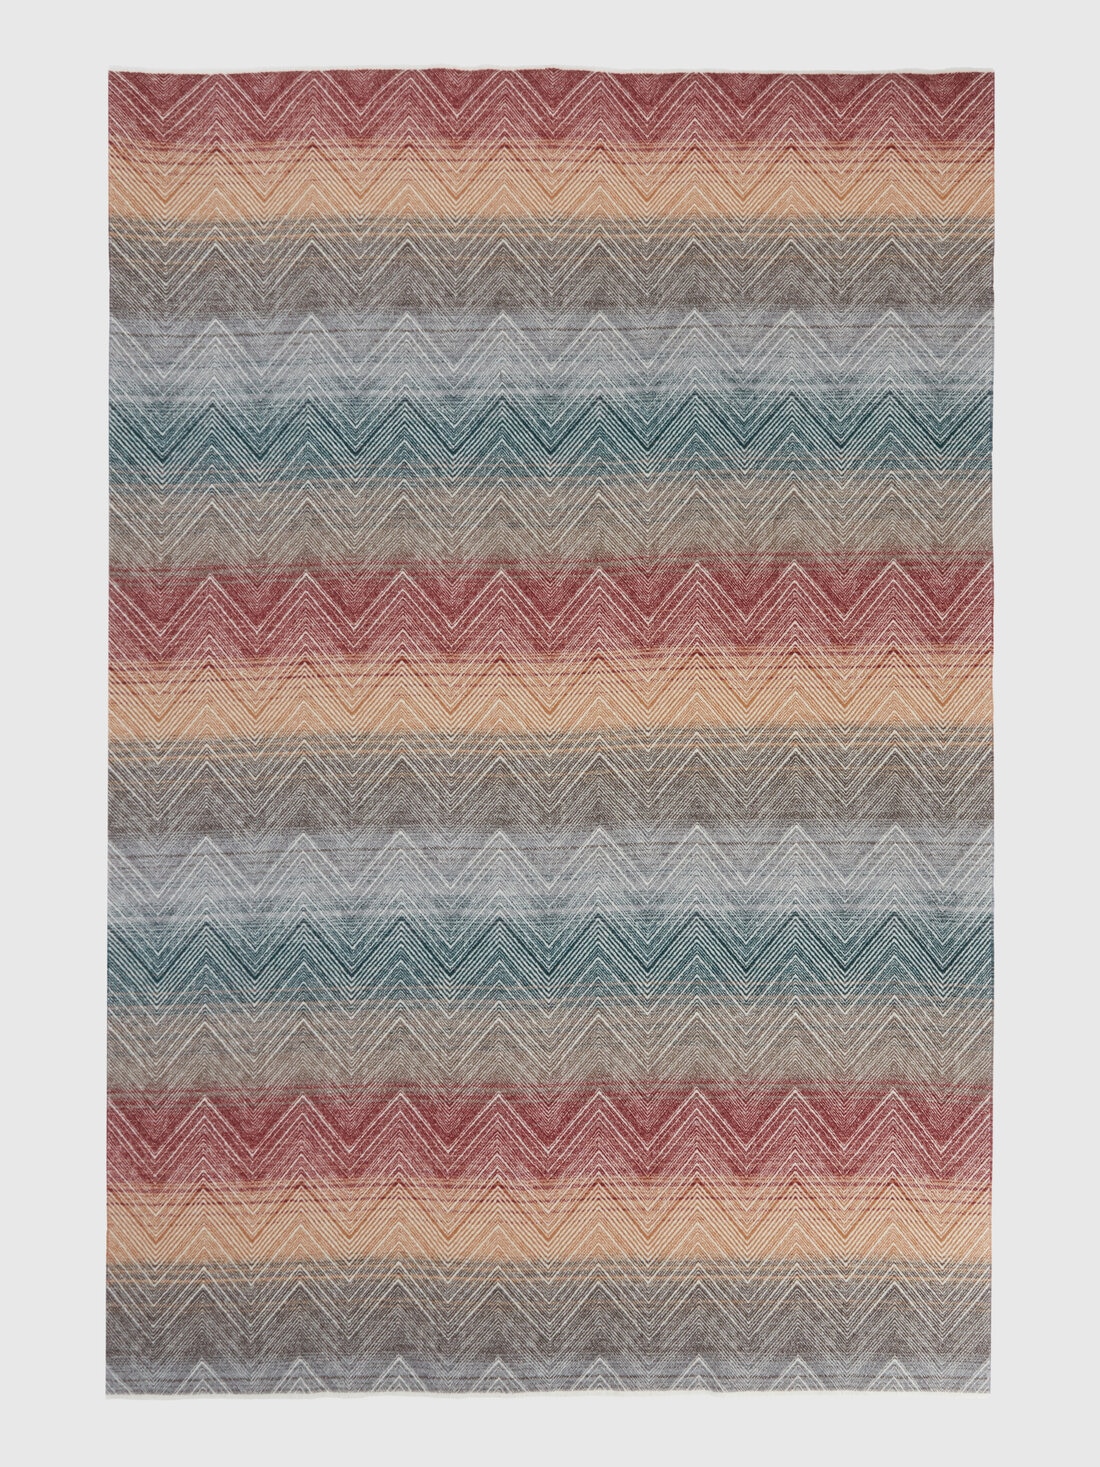 Marea, Decke 130x190 cm aus Wolle mit Chevronmuster , Mehrfarbig  - 8053147134765 - 1